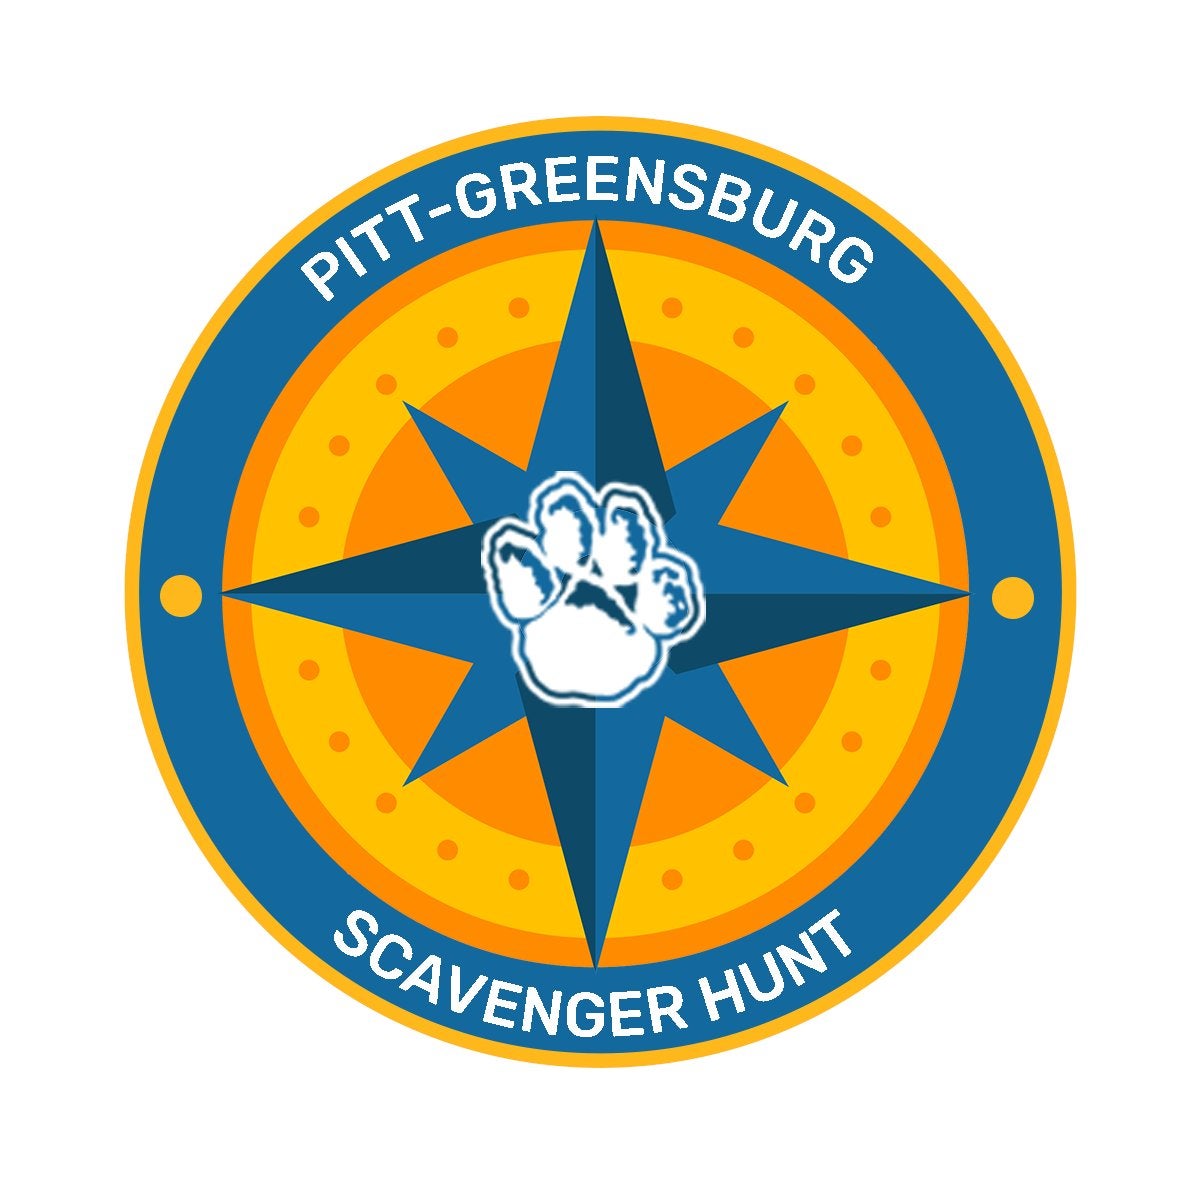 Pitt-Greensburg Scavenger Hunt logo